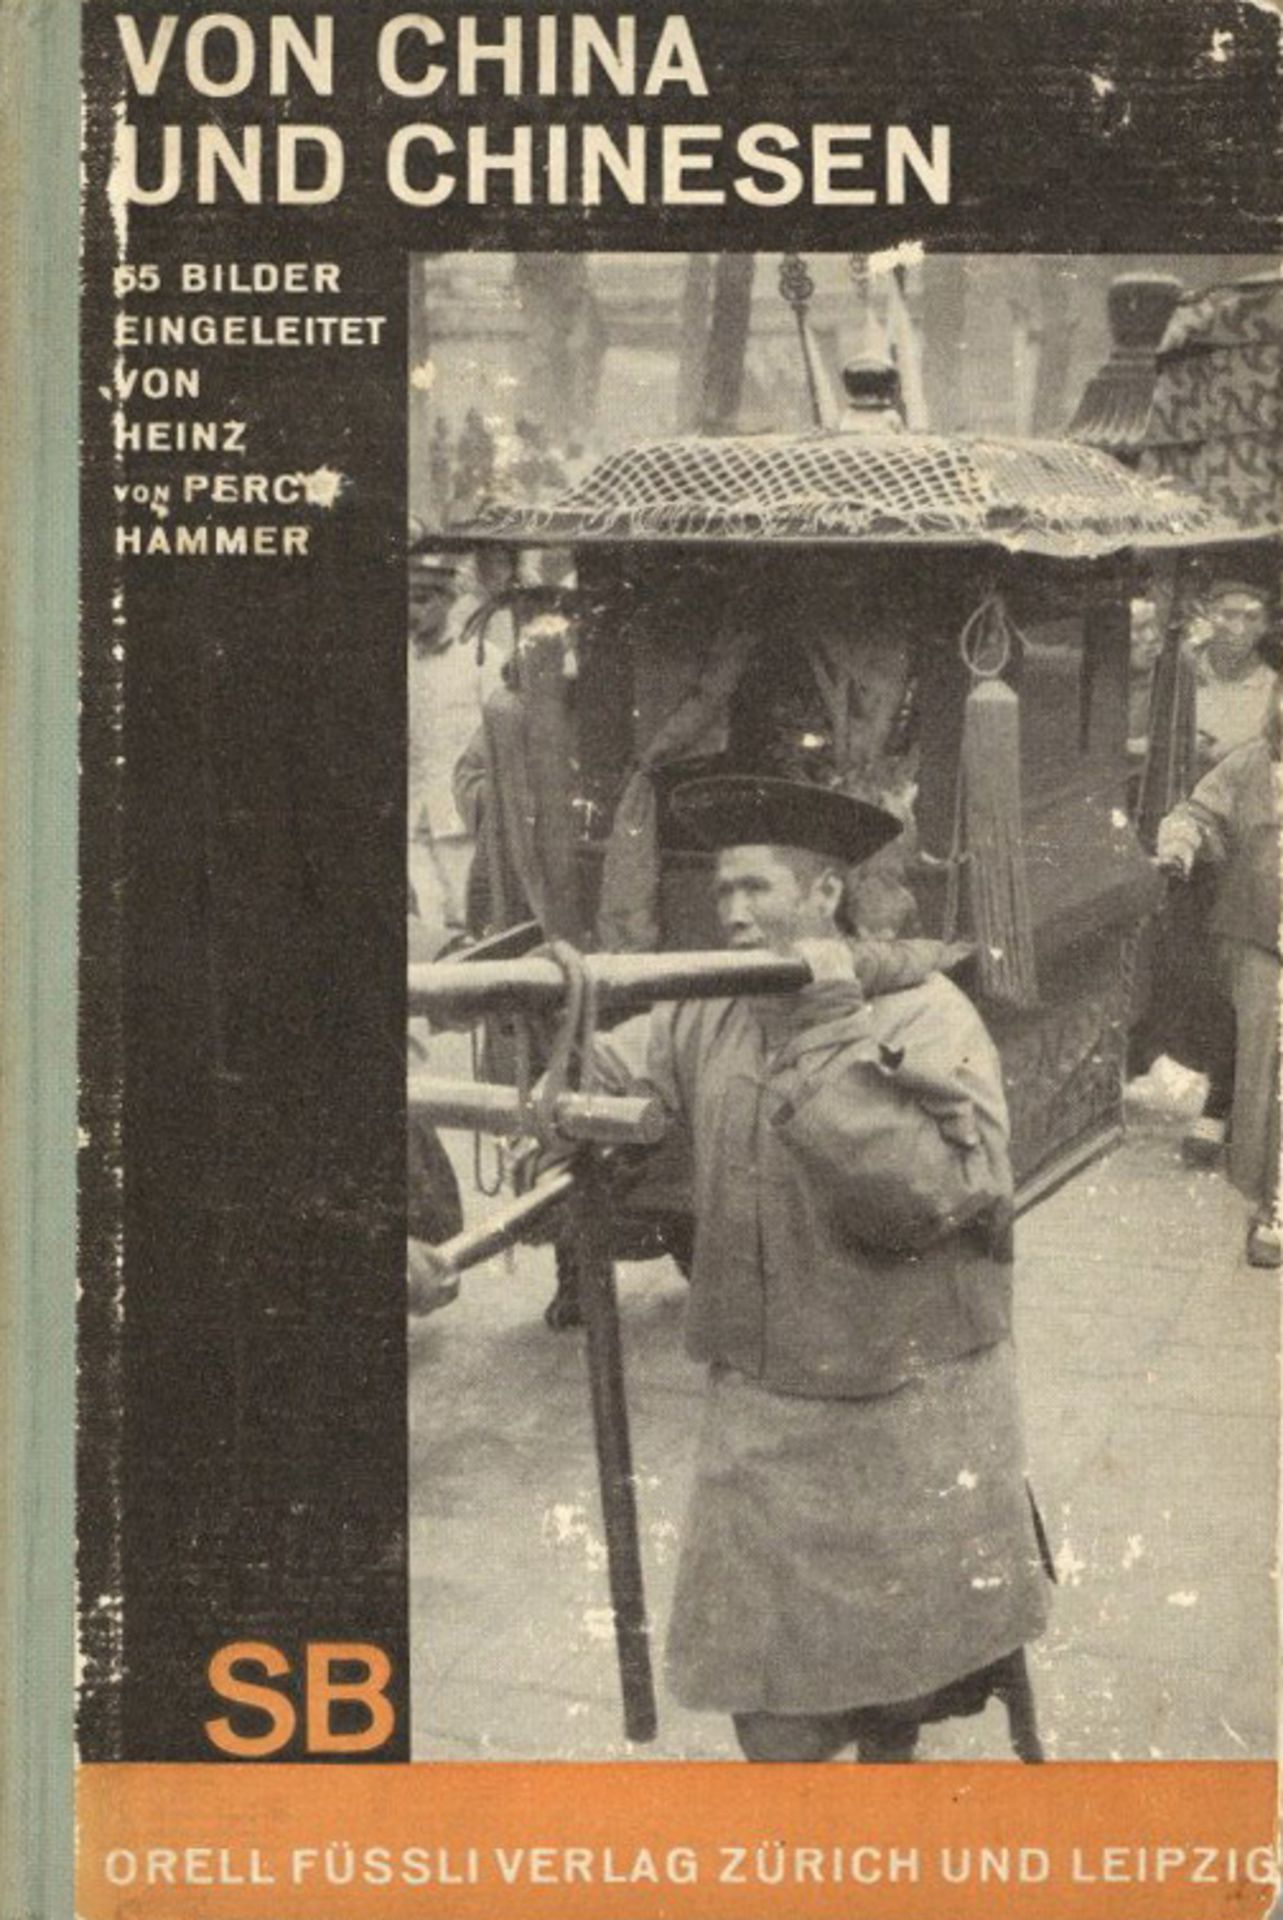 Kolonien China Buch Von China und Chinesen Verlag Orell Füssli 1930 Zürich Bildband mit 64 S. mit